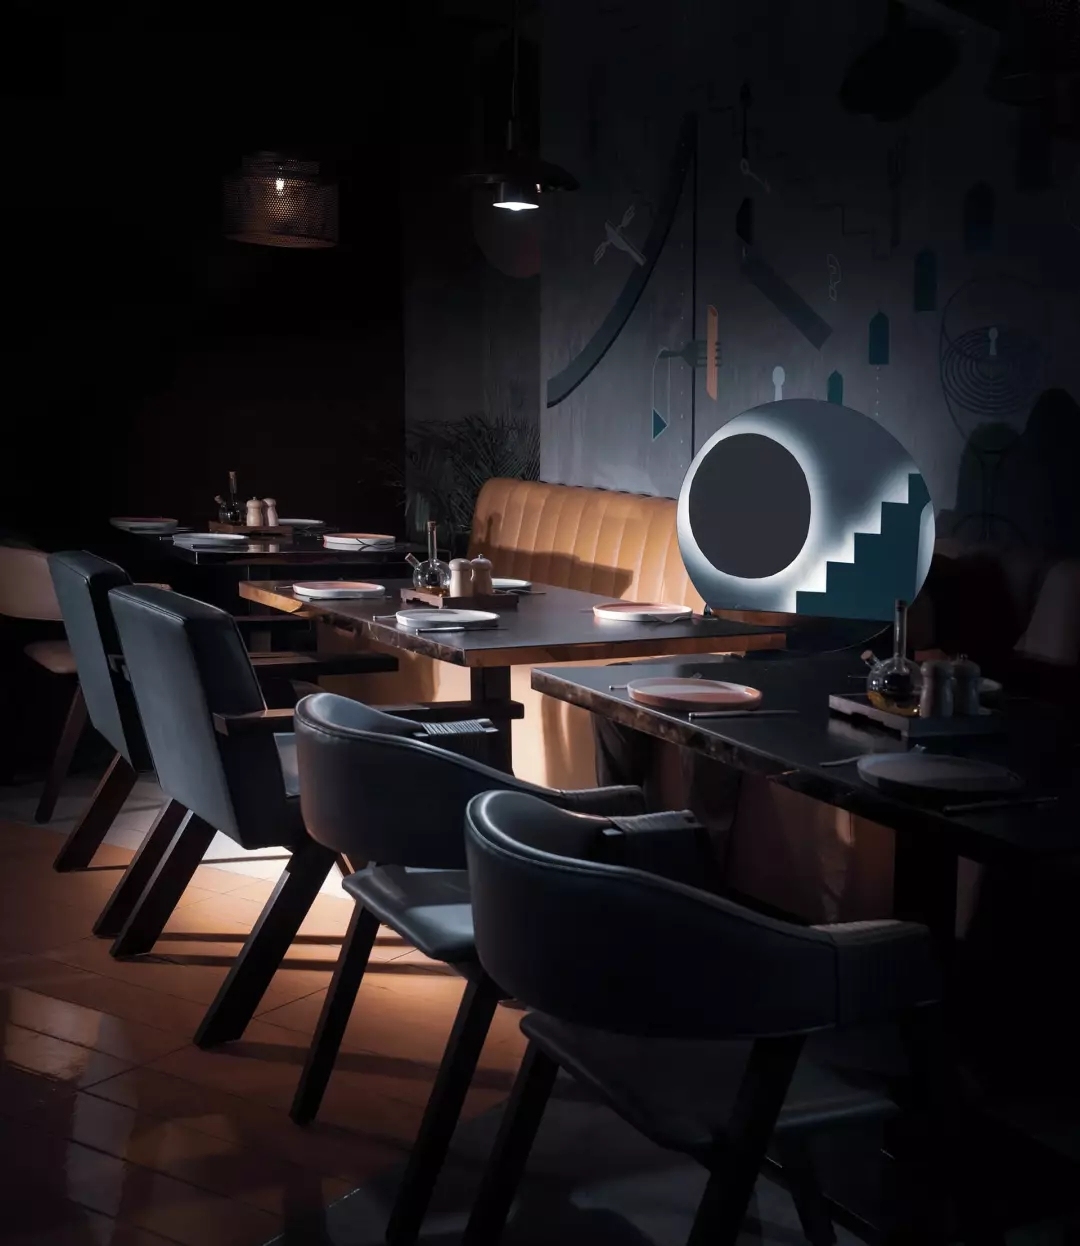 游戏主题酒吧餐厅，不仅空间设计独特而且趣味性十足